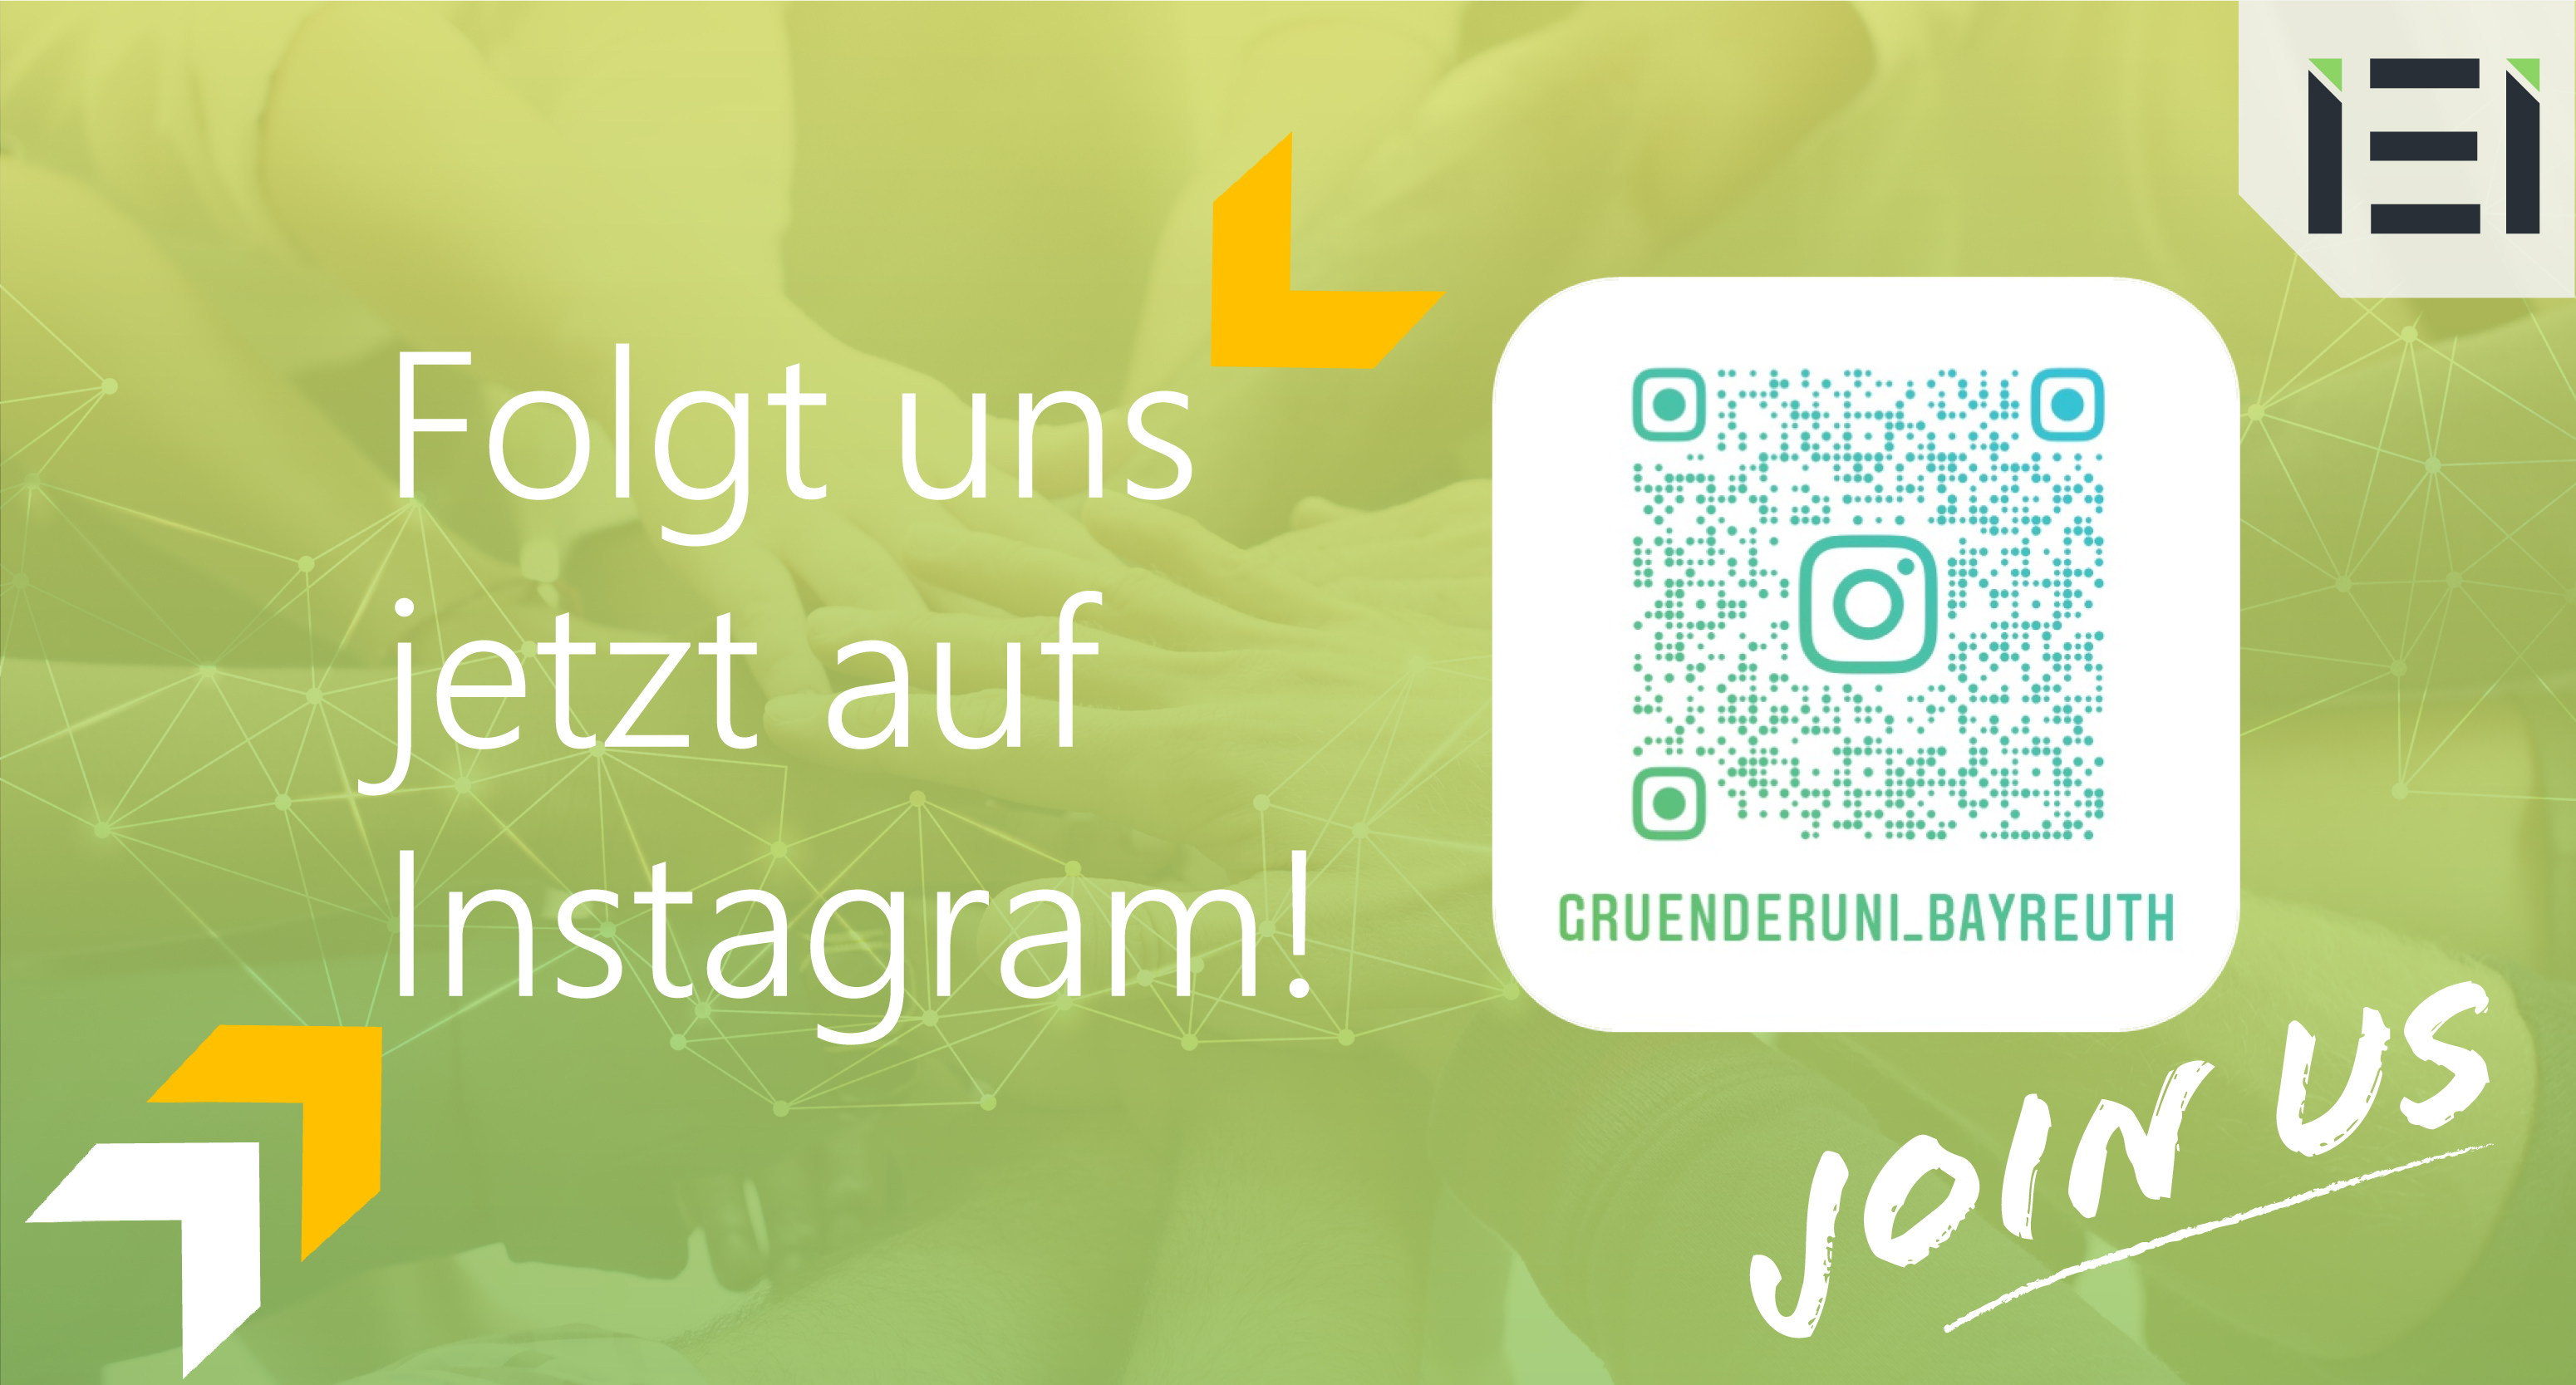 Das Institut für Entrepreneurship findet man jetzt auch bei Instagram. Suche nach gruenderuni_bayreuth.